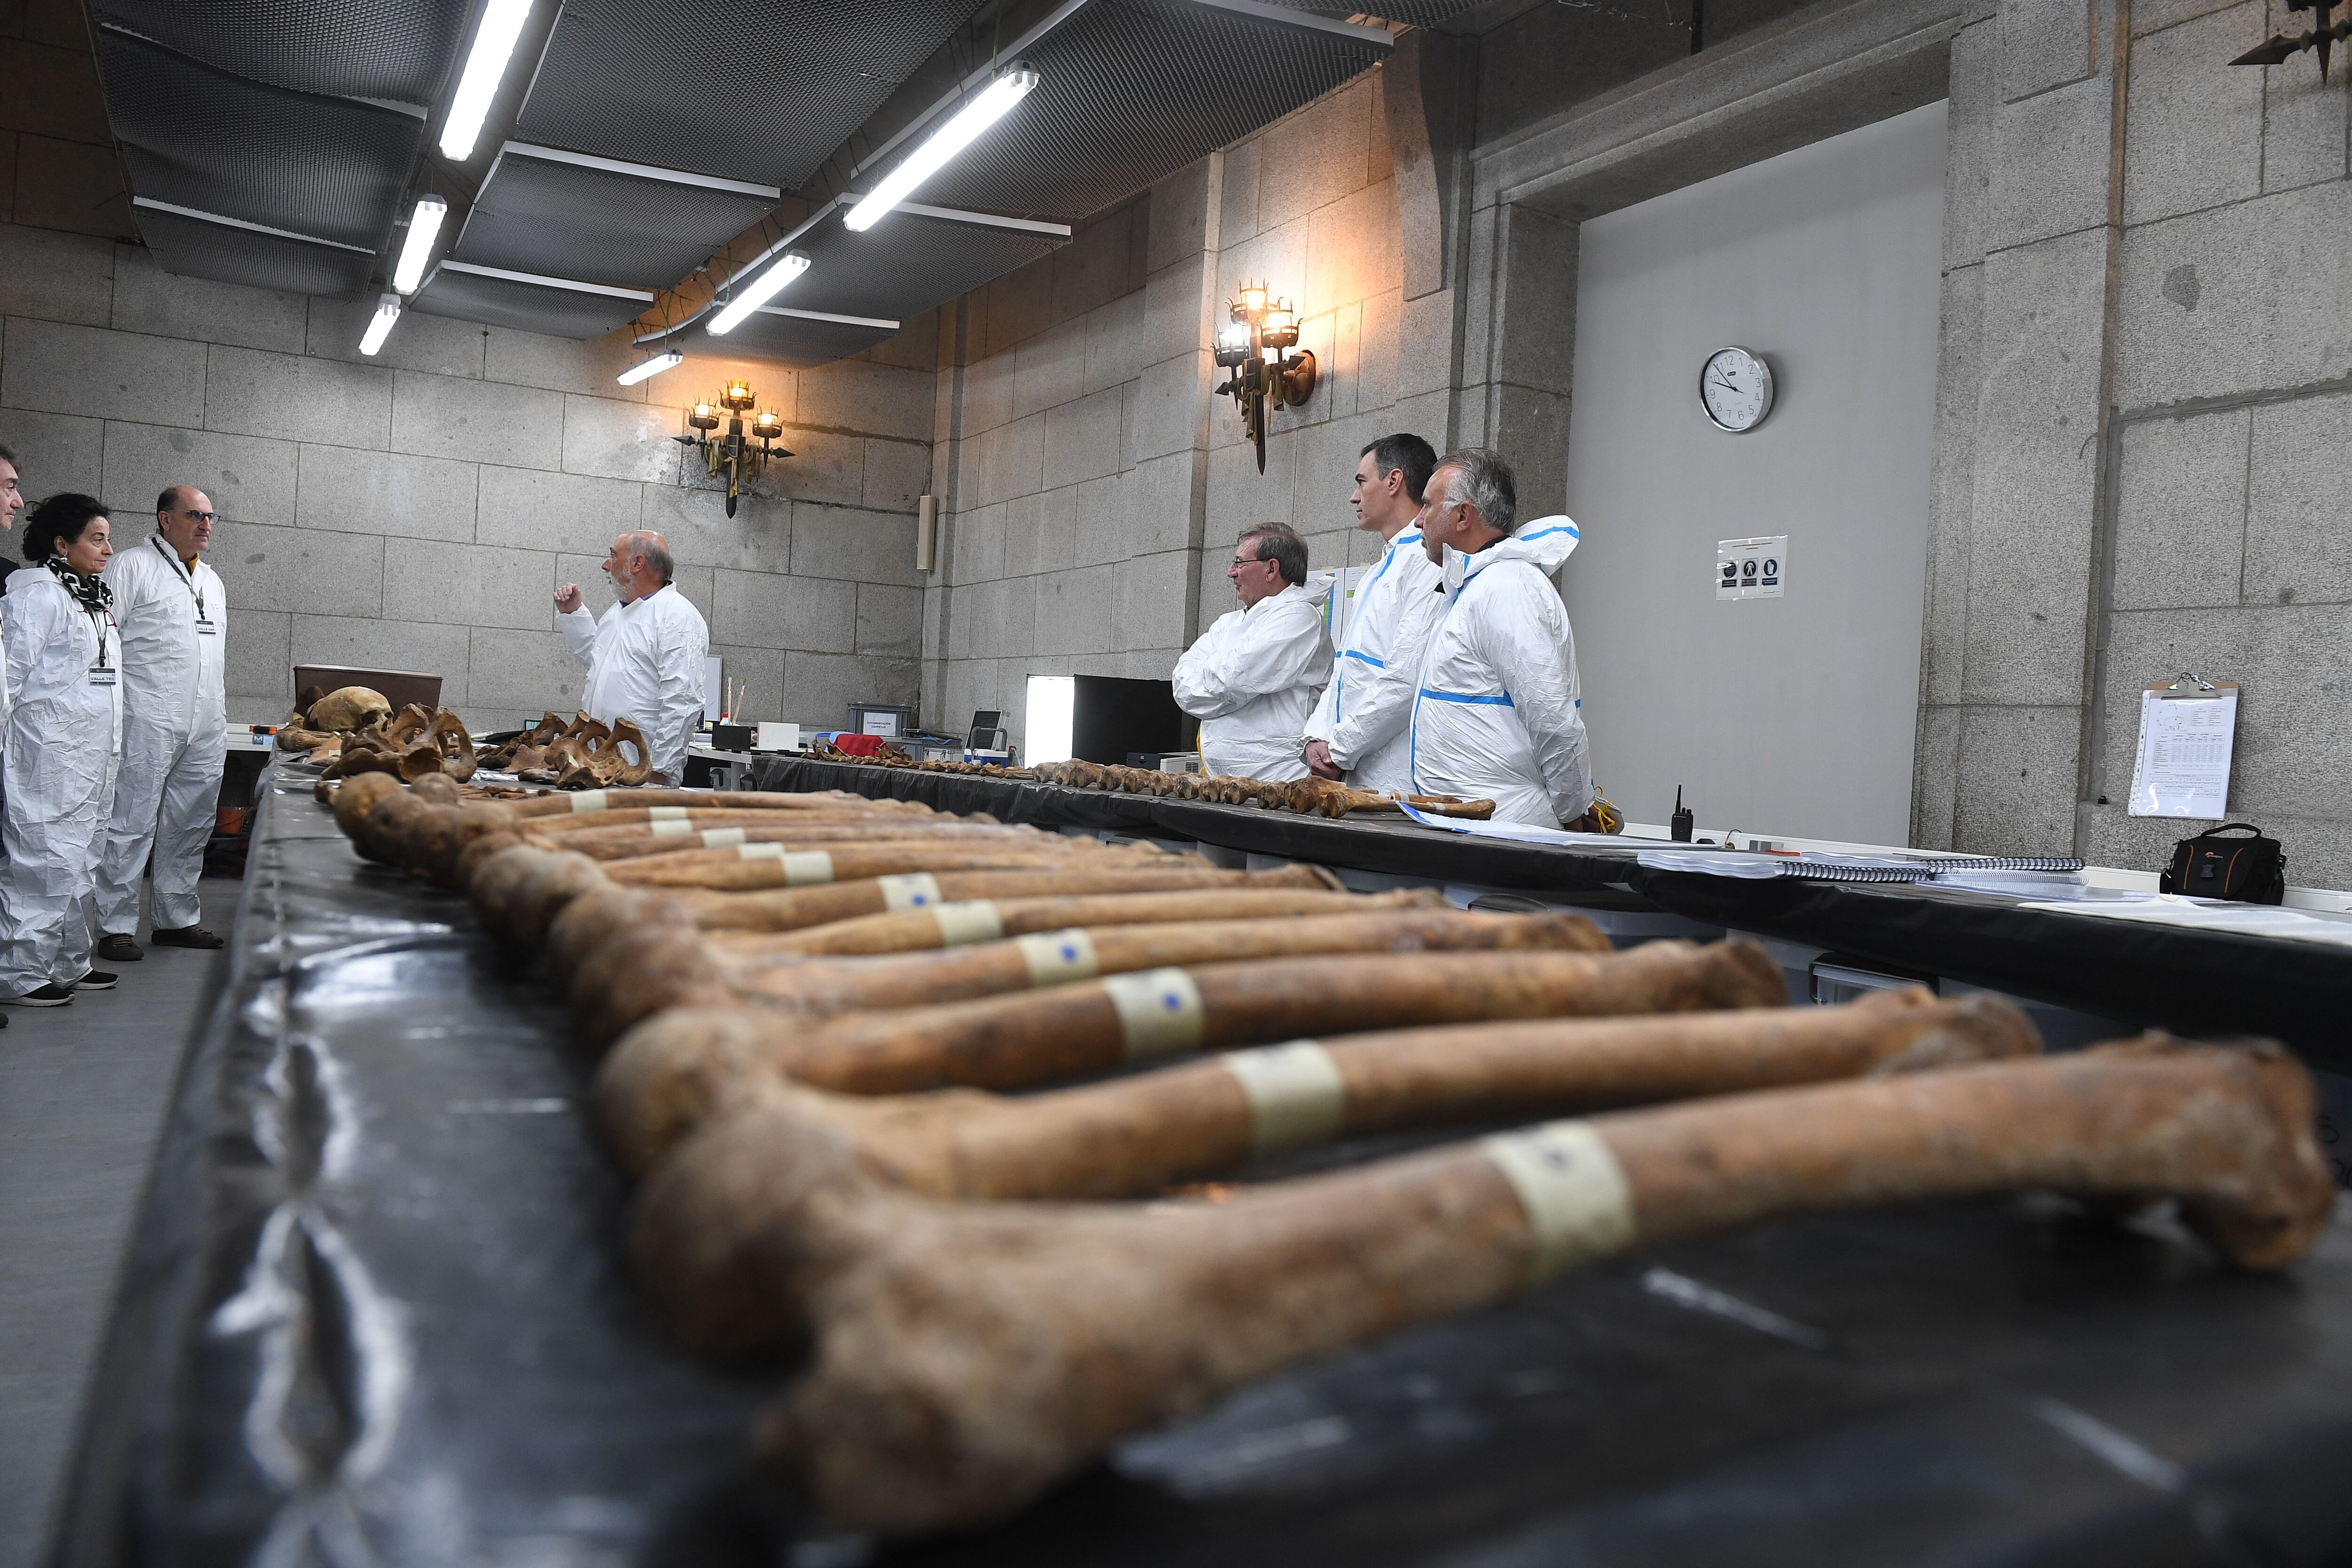 El presidente del Gobierno, Pedro Sánchez, ha visitado este jueves el laboratorio forense en el Valle de Cuelgamuros, para conocer de primera manos los trabajos del equipo forense que trabaja en la exhumación de 160 víctimas.